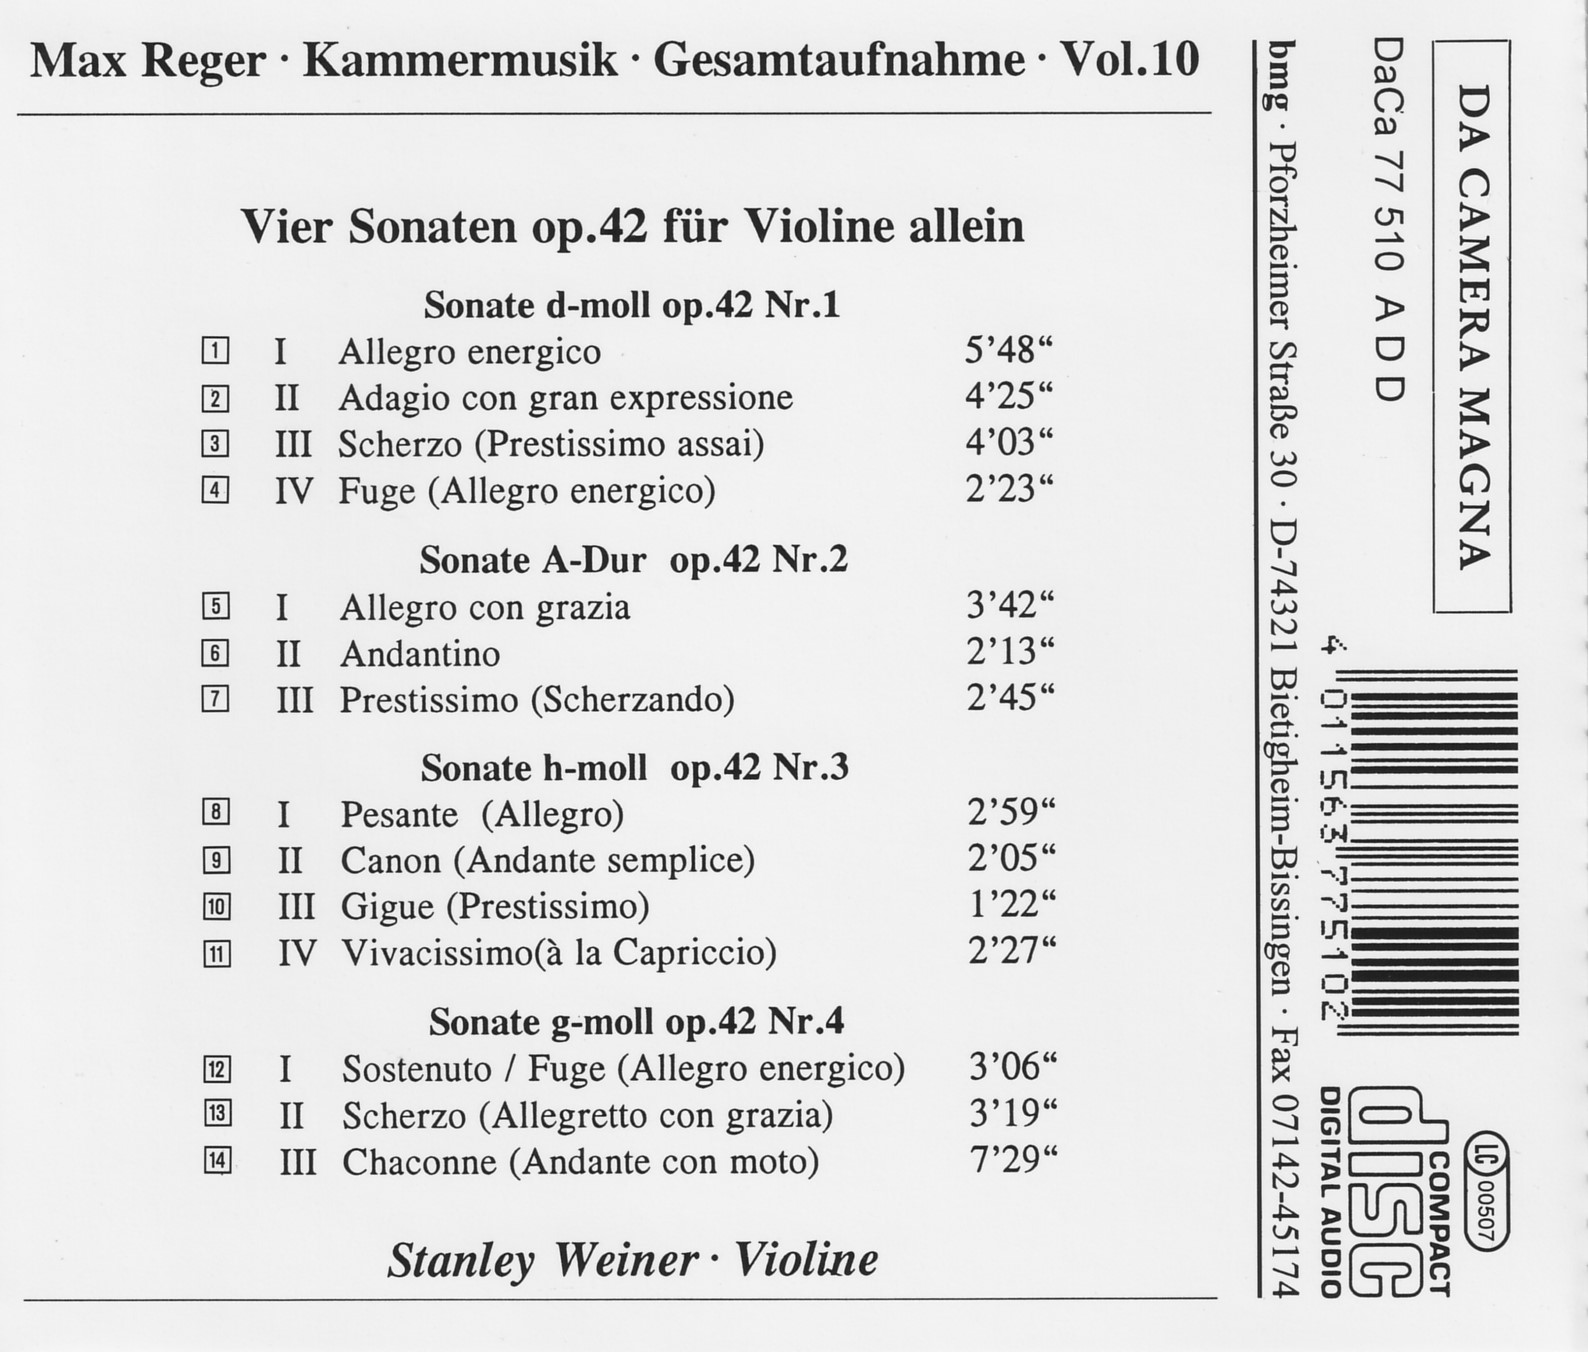 Max Reger - Kammermusik komplett Vol. 10